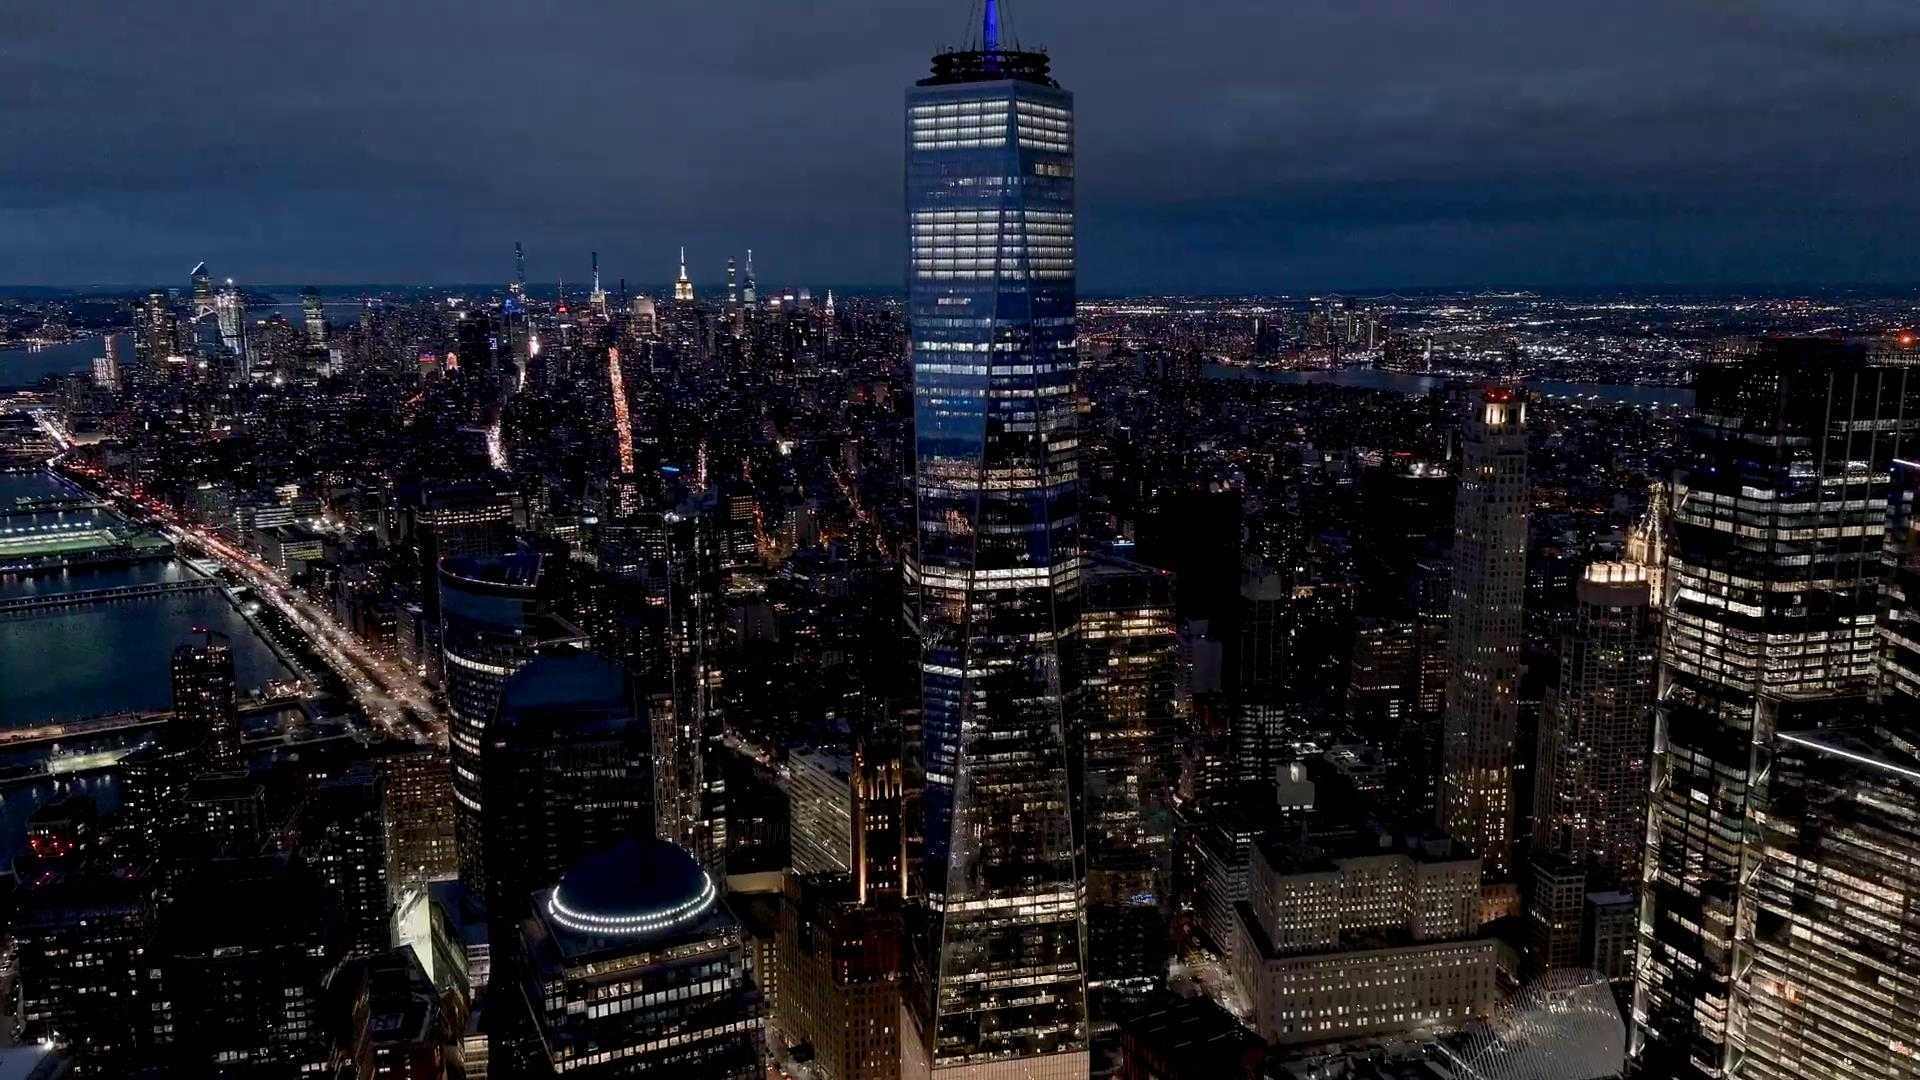 灯火璀璨的城市夜景《曼哈顿》